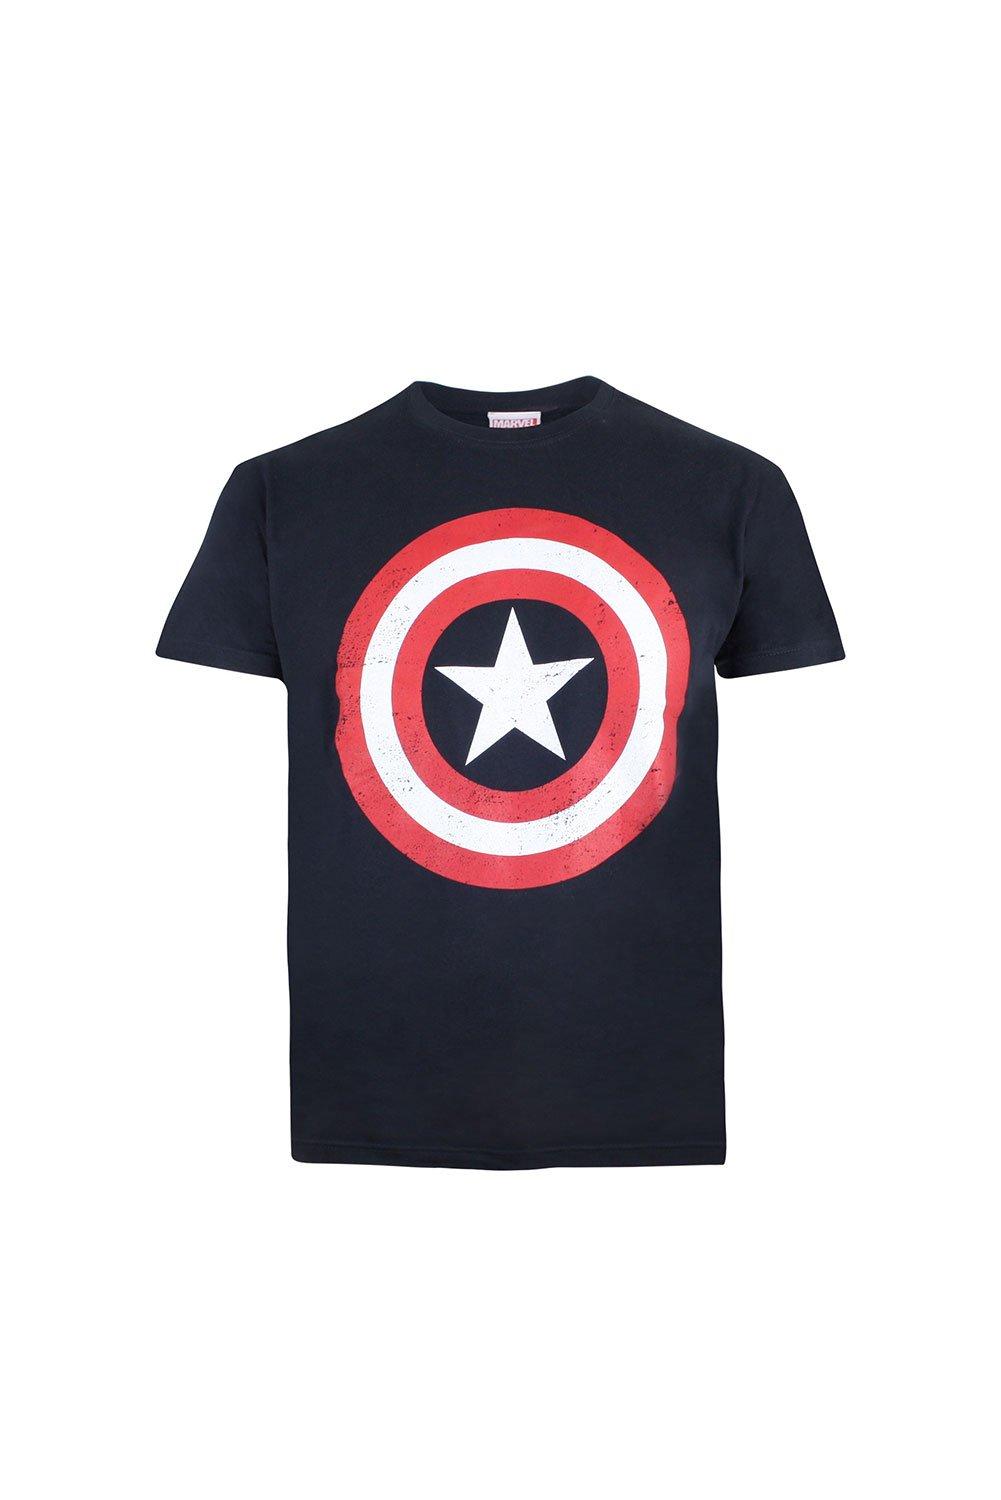 Хлопковая футболка со щитом Капитана Америки Marvel, синий рюкзак капитана америки marvel синий